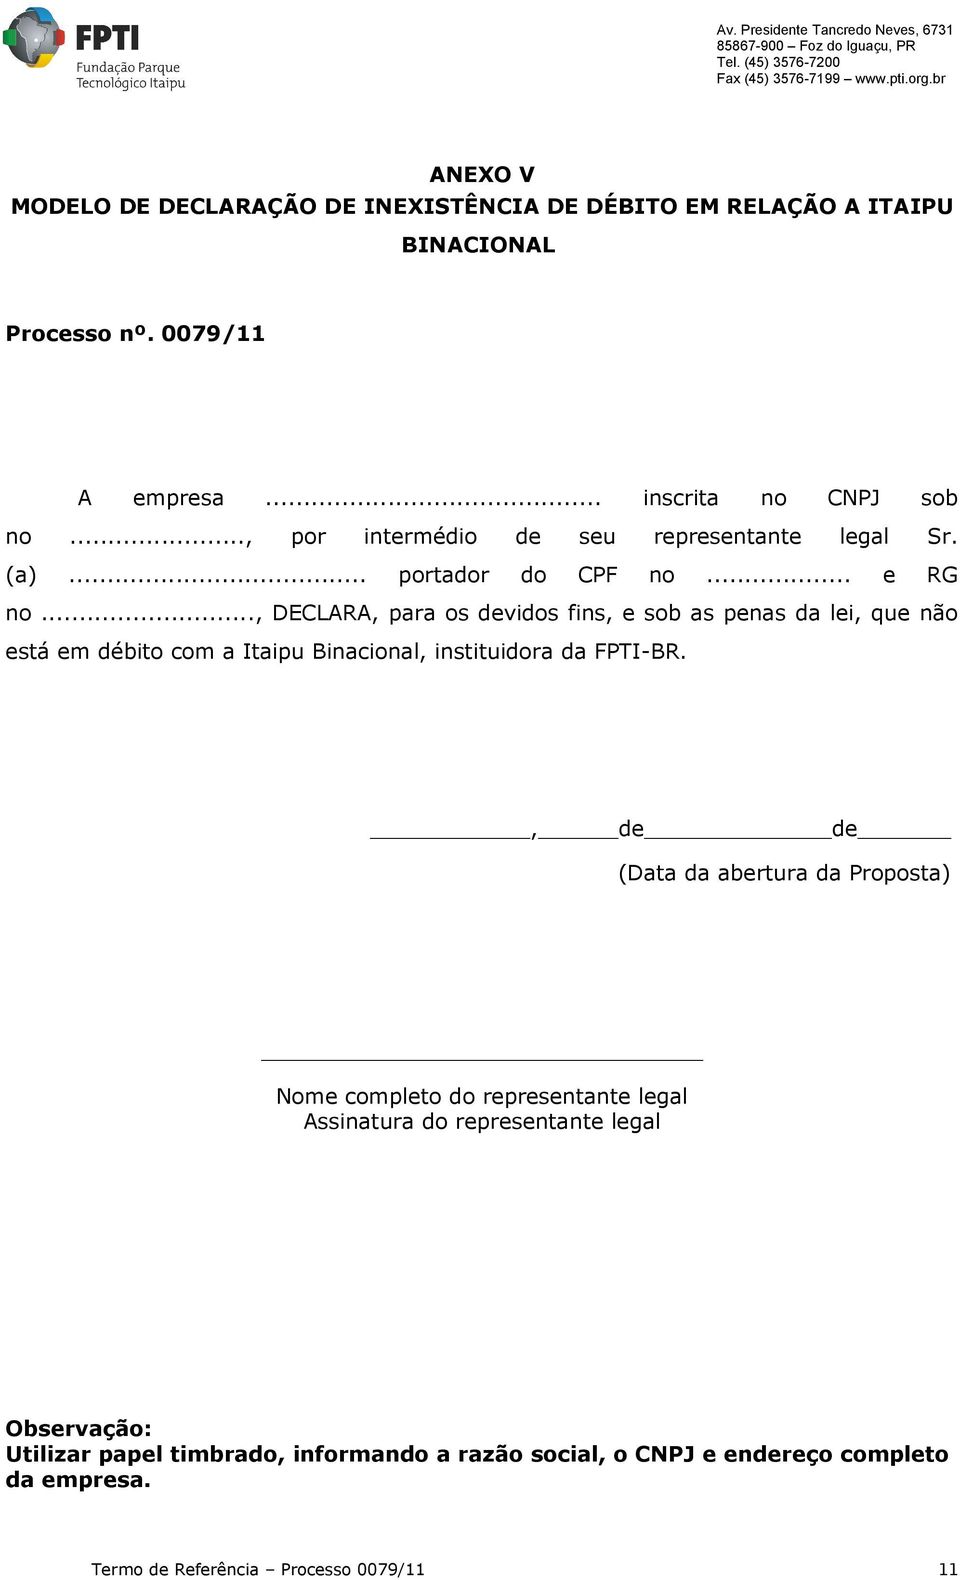 .., DECLARA, para os devidos fins, e sob as penas da lei, que não está em débito com a Itaipu Binacional, instituidora da FPTI-BR.